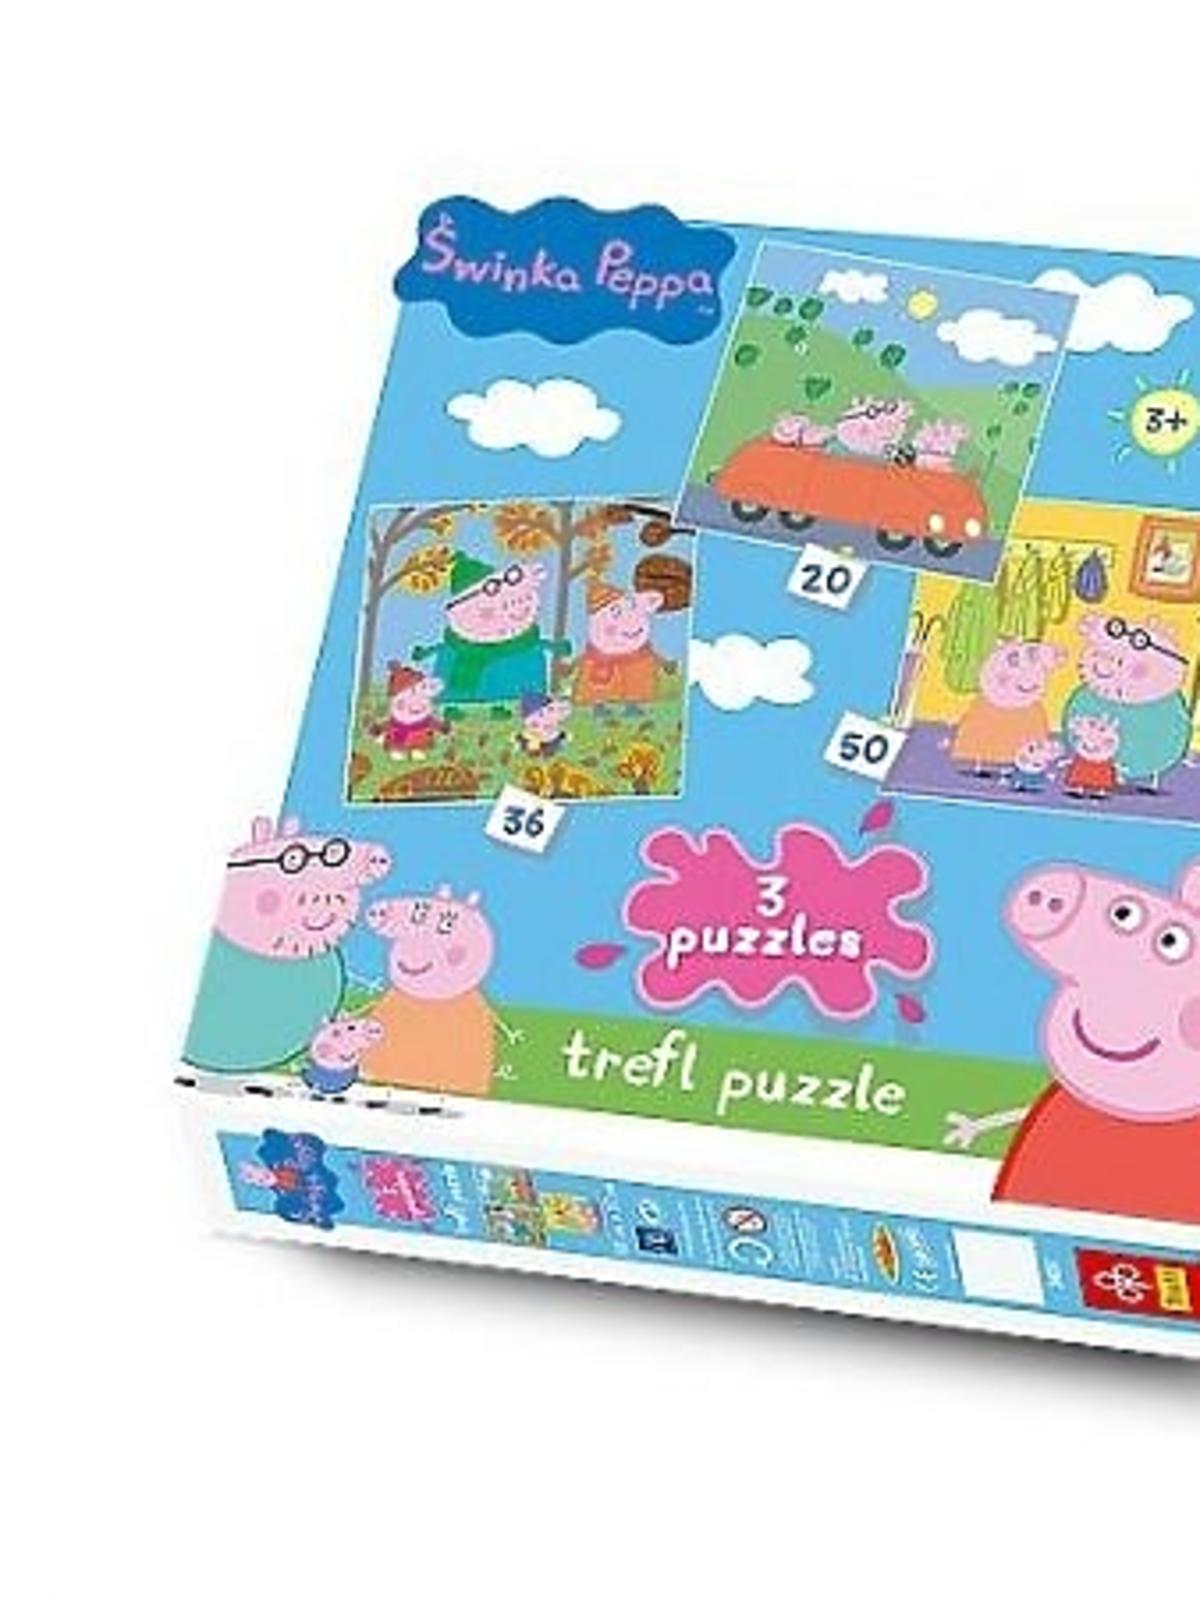 puzzle dla dzieci ze świnką peppą trefl.jpg